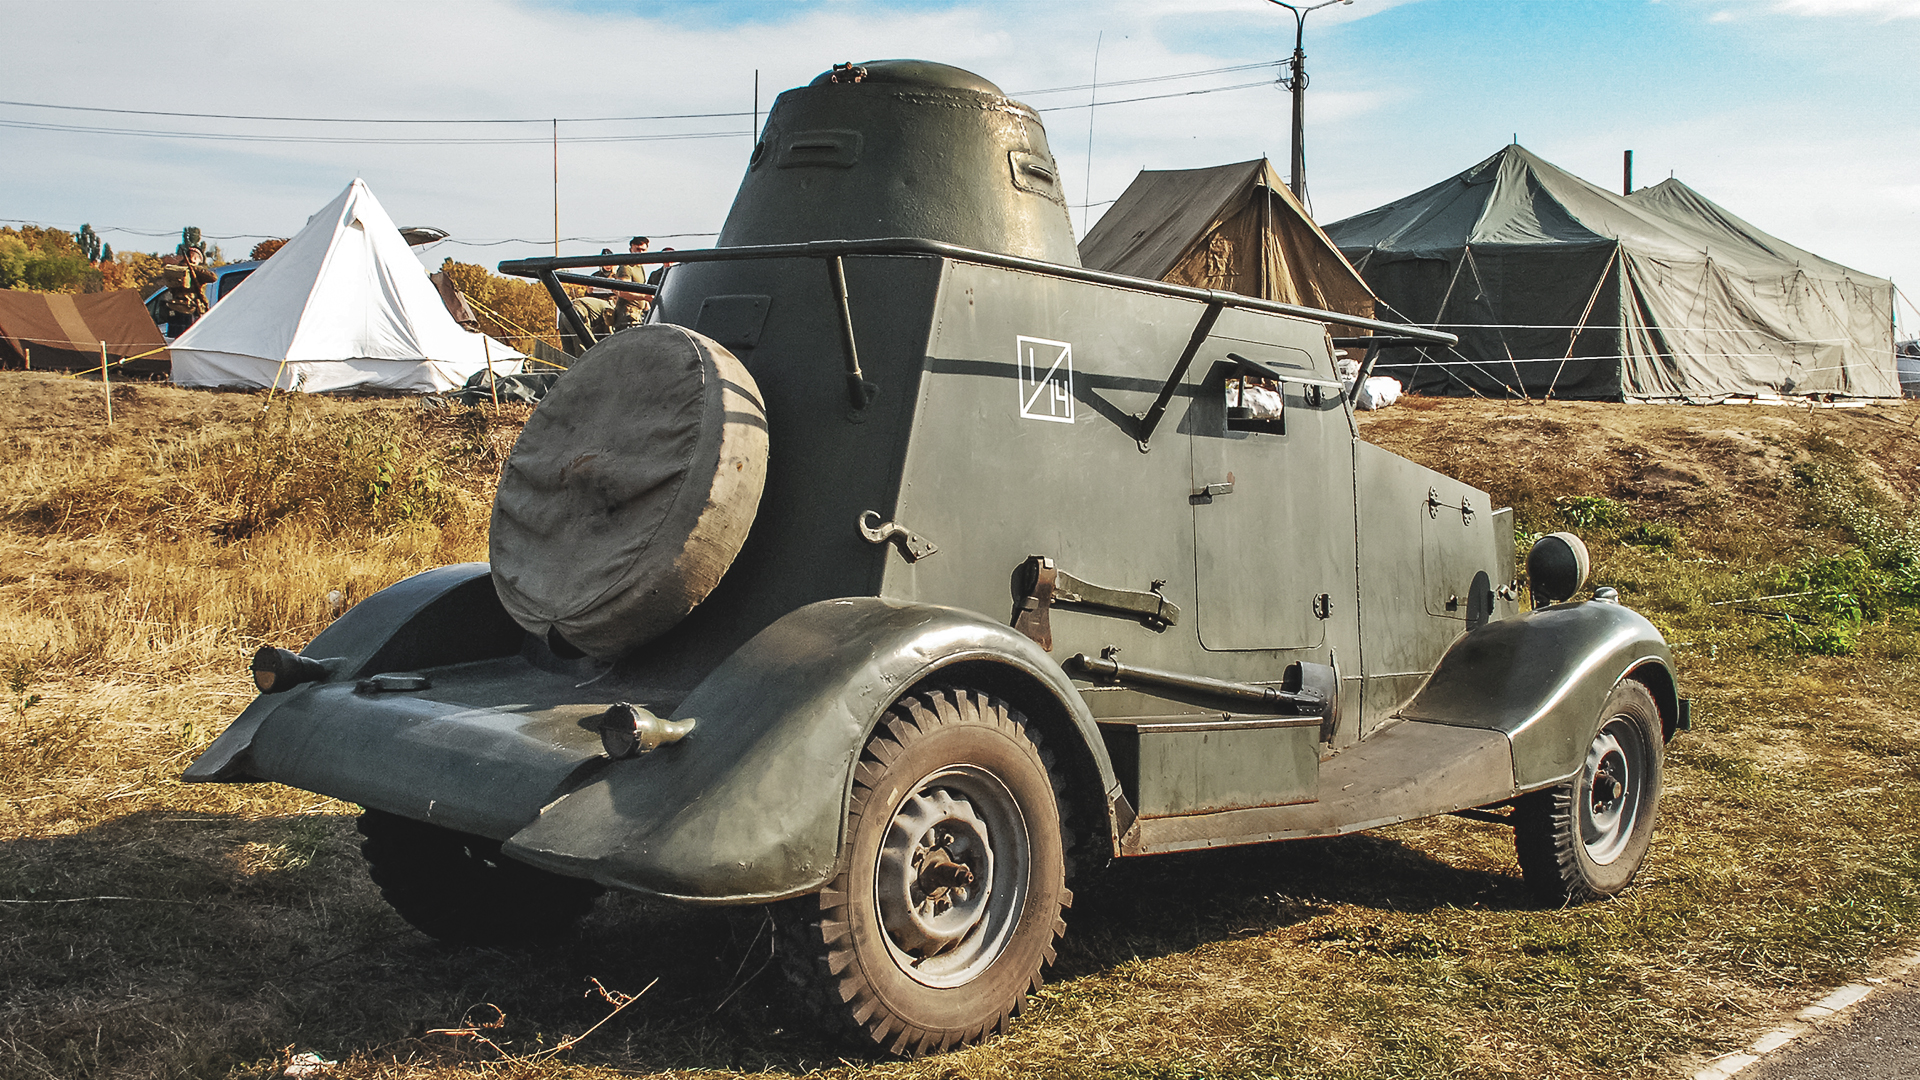 Броневик ба-20, описание и технические характеристики ттх советского бронеавтомобиля